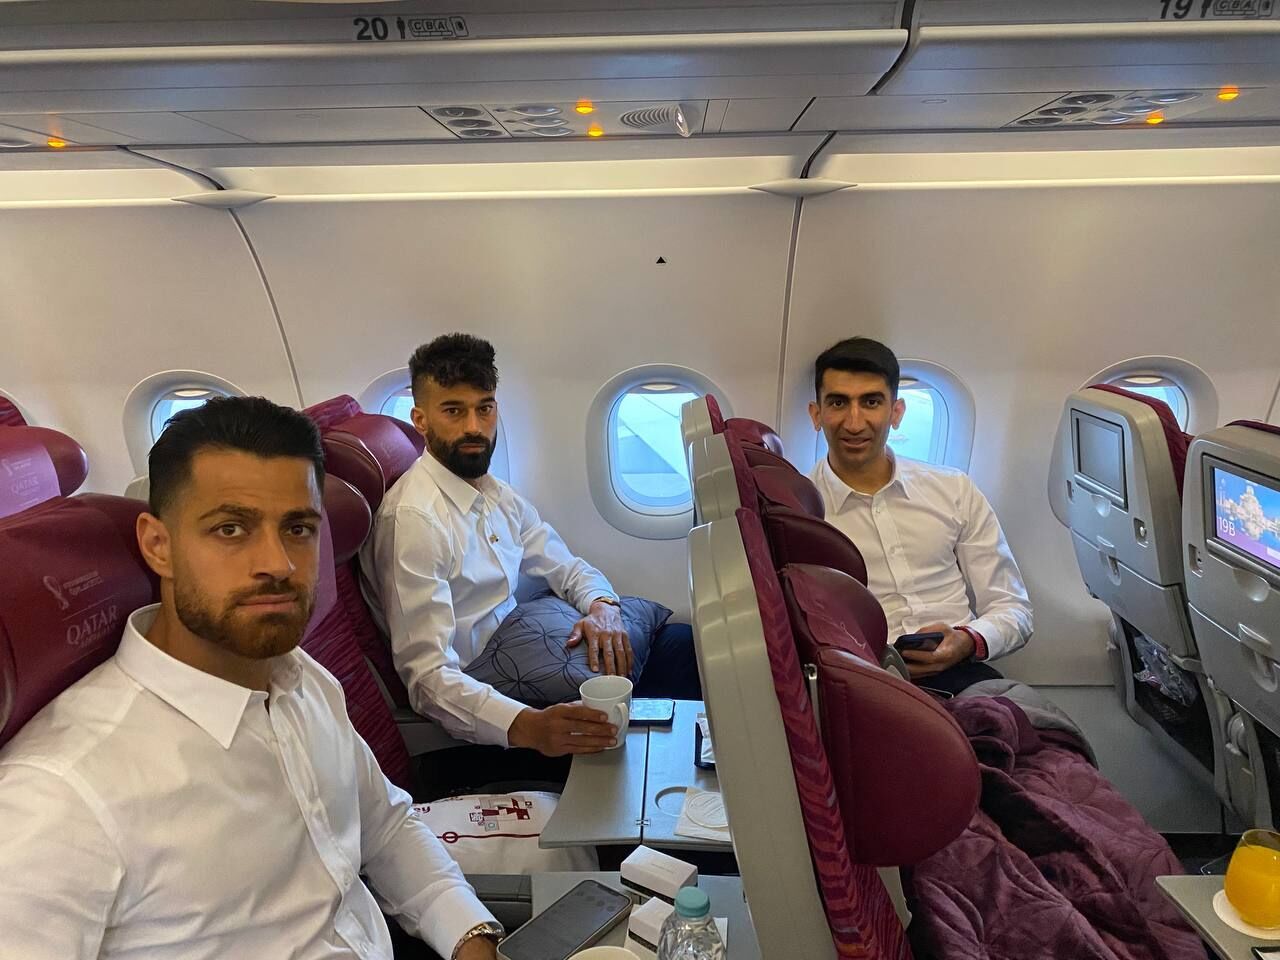 Coupe du monde 2022: les membres de l'équipe d’Iran partent pour Doha